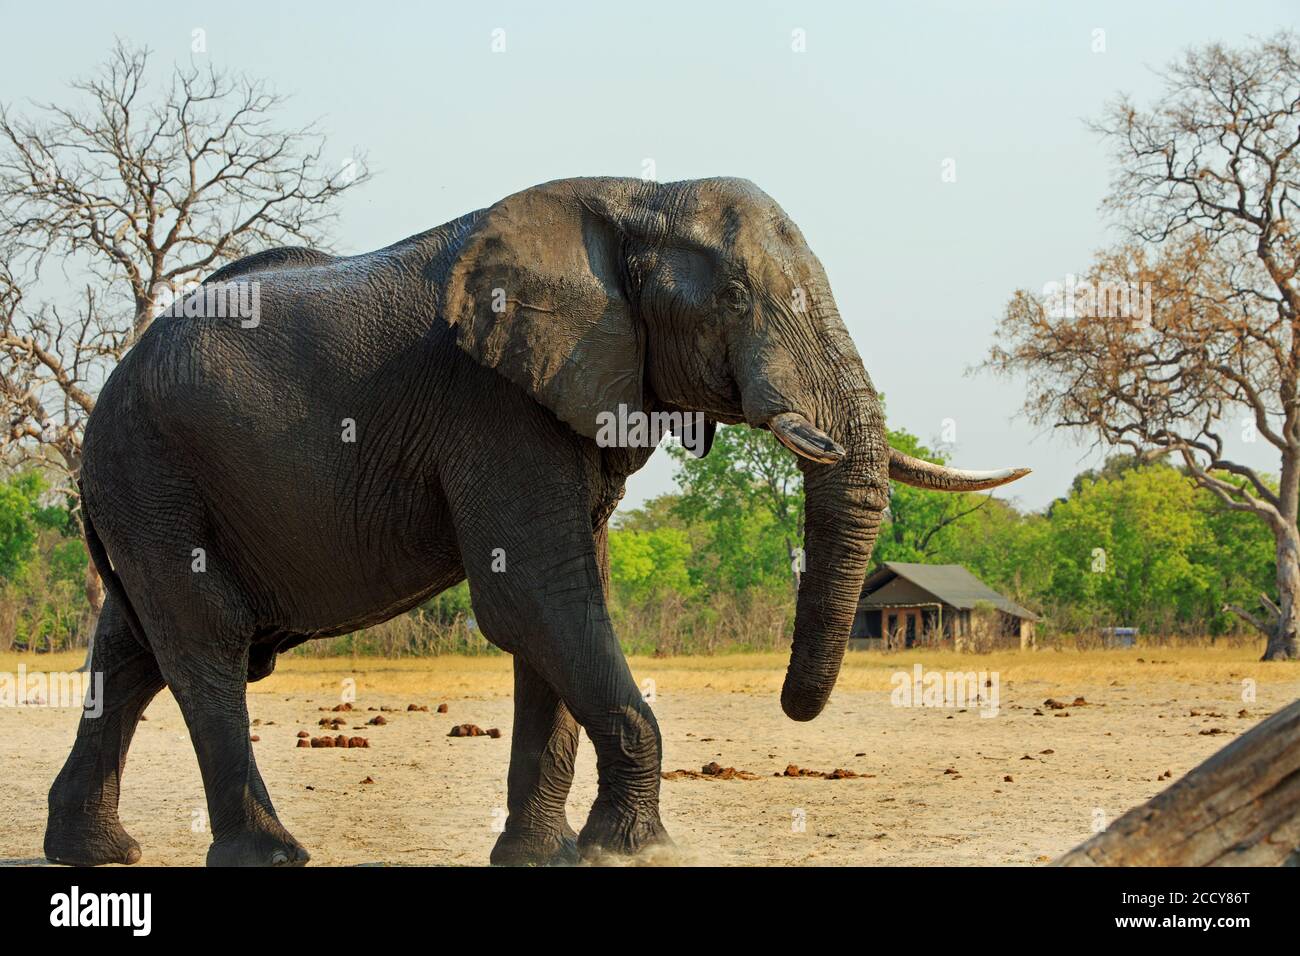 L'elefante selvaggio africano cammina attraverso i campi da campeggio con un rifugio safari sullo sfondo. Parco nazionale di Makololo Plains Hwange, Zimbabwe Foto Stock